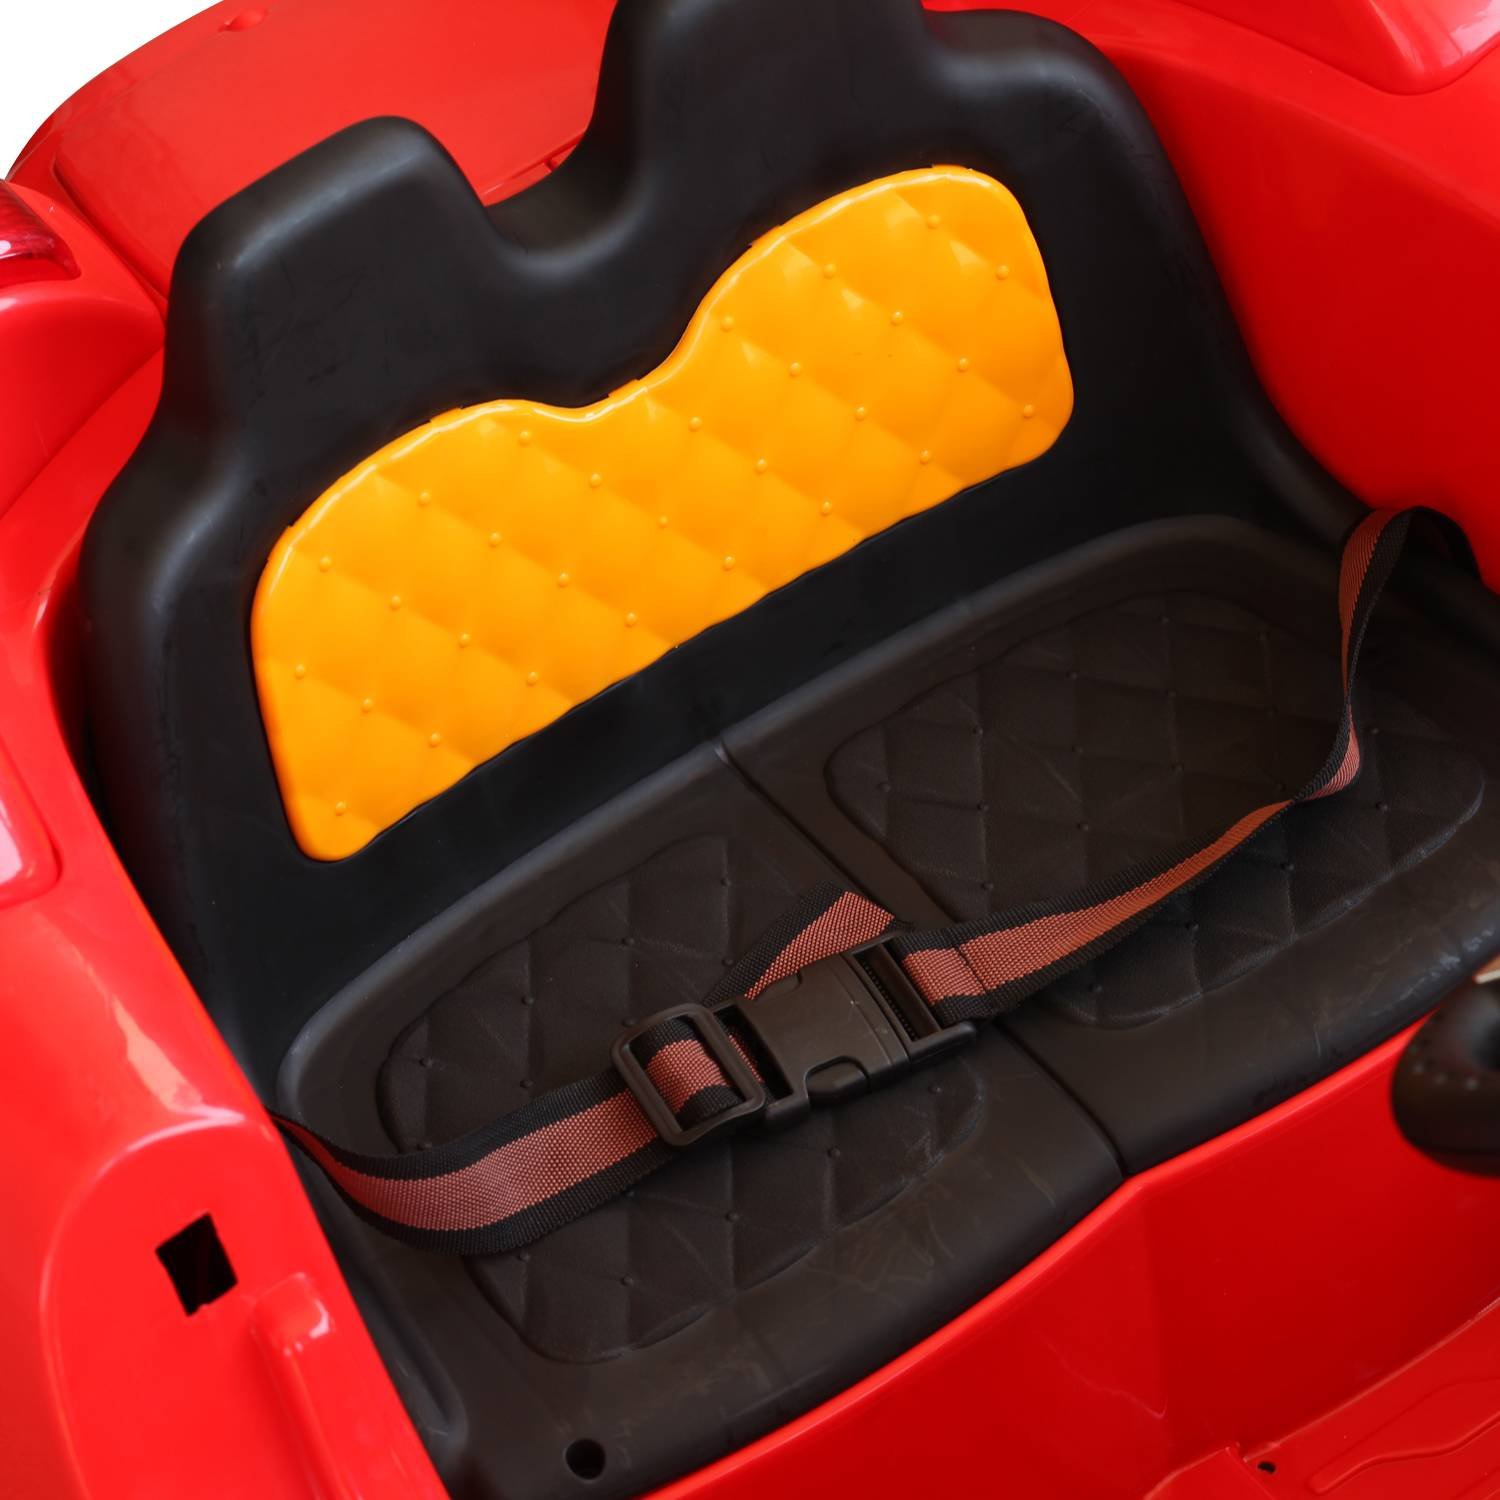 Carrinho de Controle Remoto F1 Ferrari Infantil Criança + 3 Anos